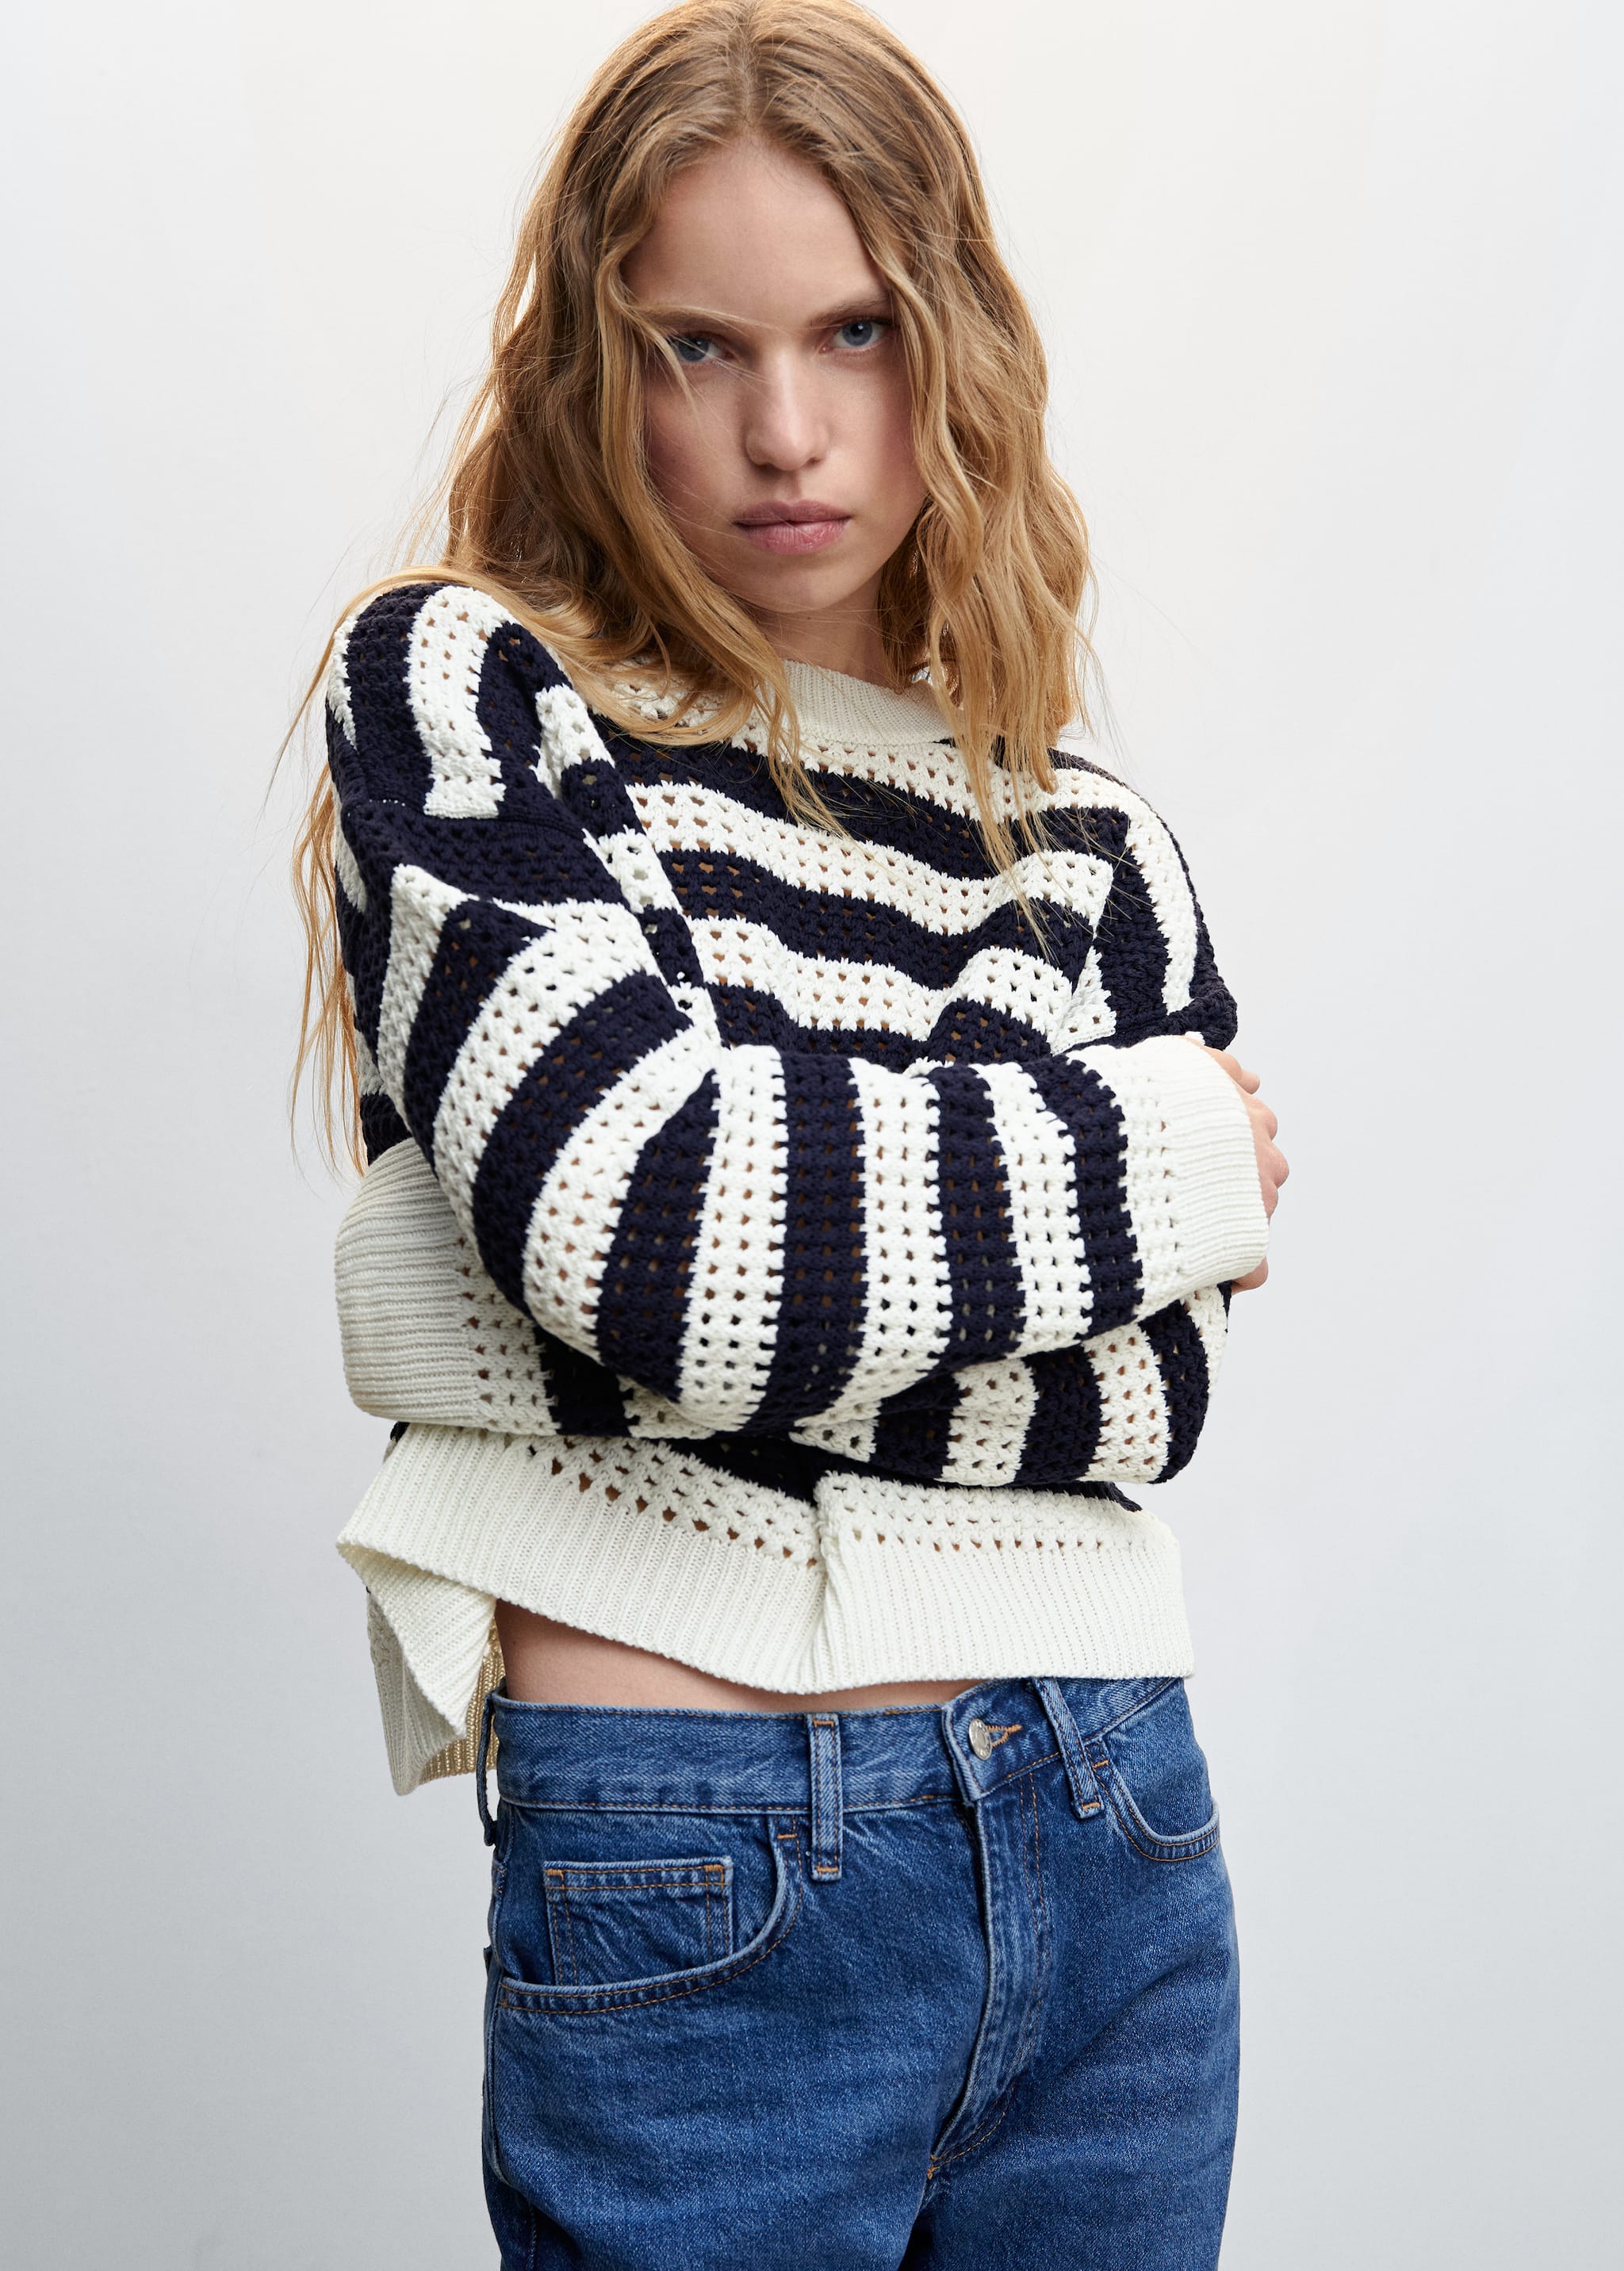 Striped openwork knit sweater - Medium plane